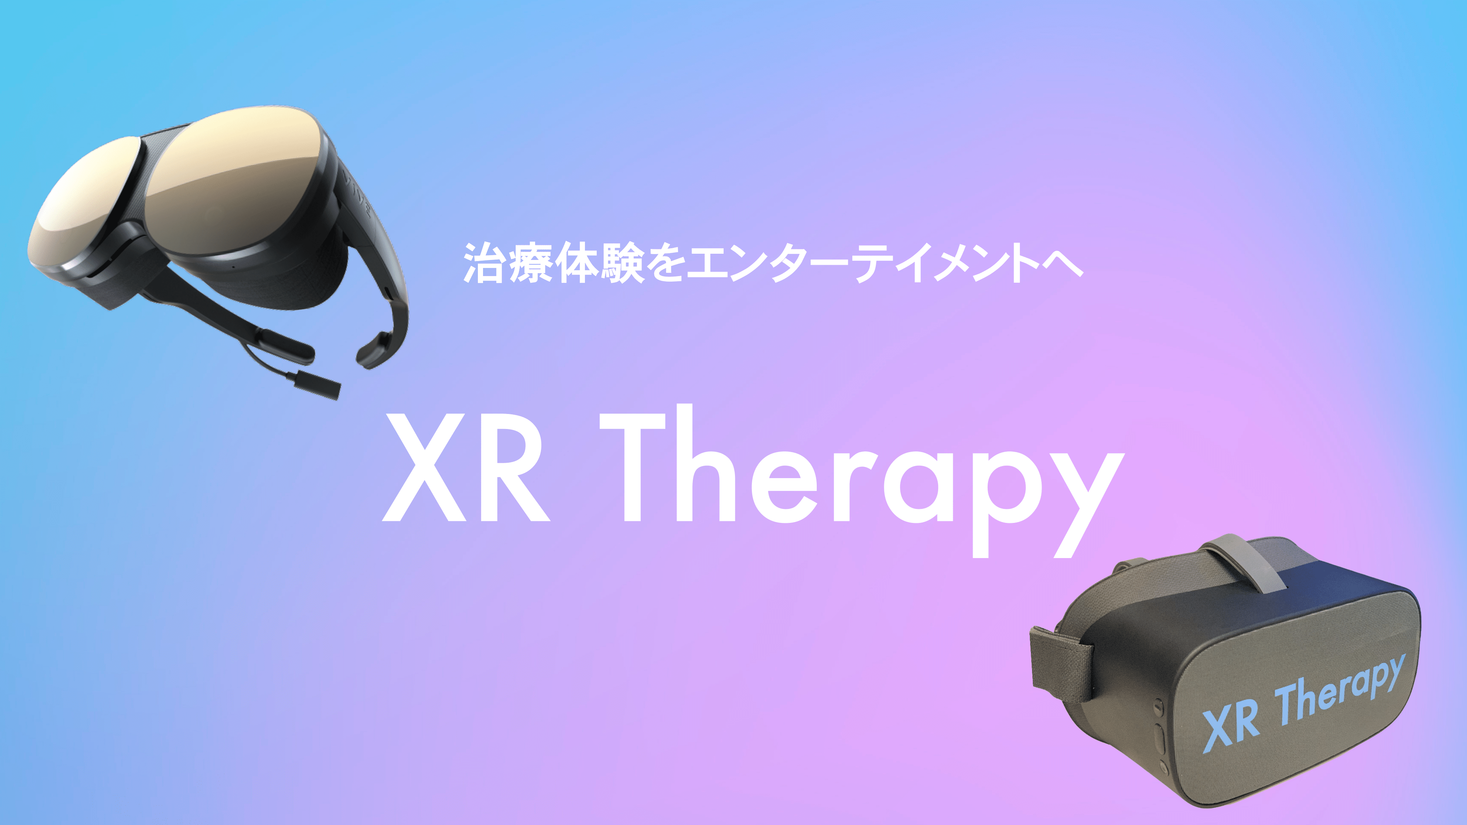 VRで治療体験をエンターテイメントに。VRで快適な治療体験を提供するXR Therapyが6月より本格展開致します。